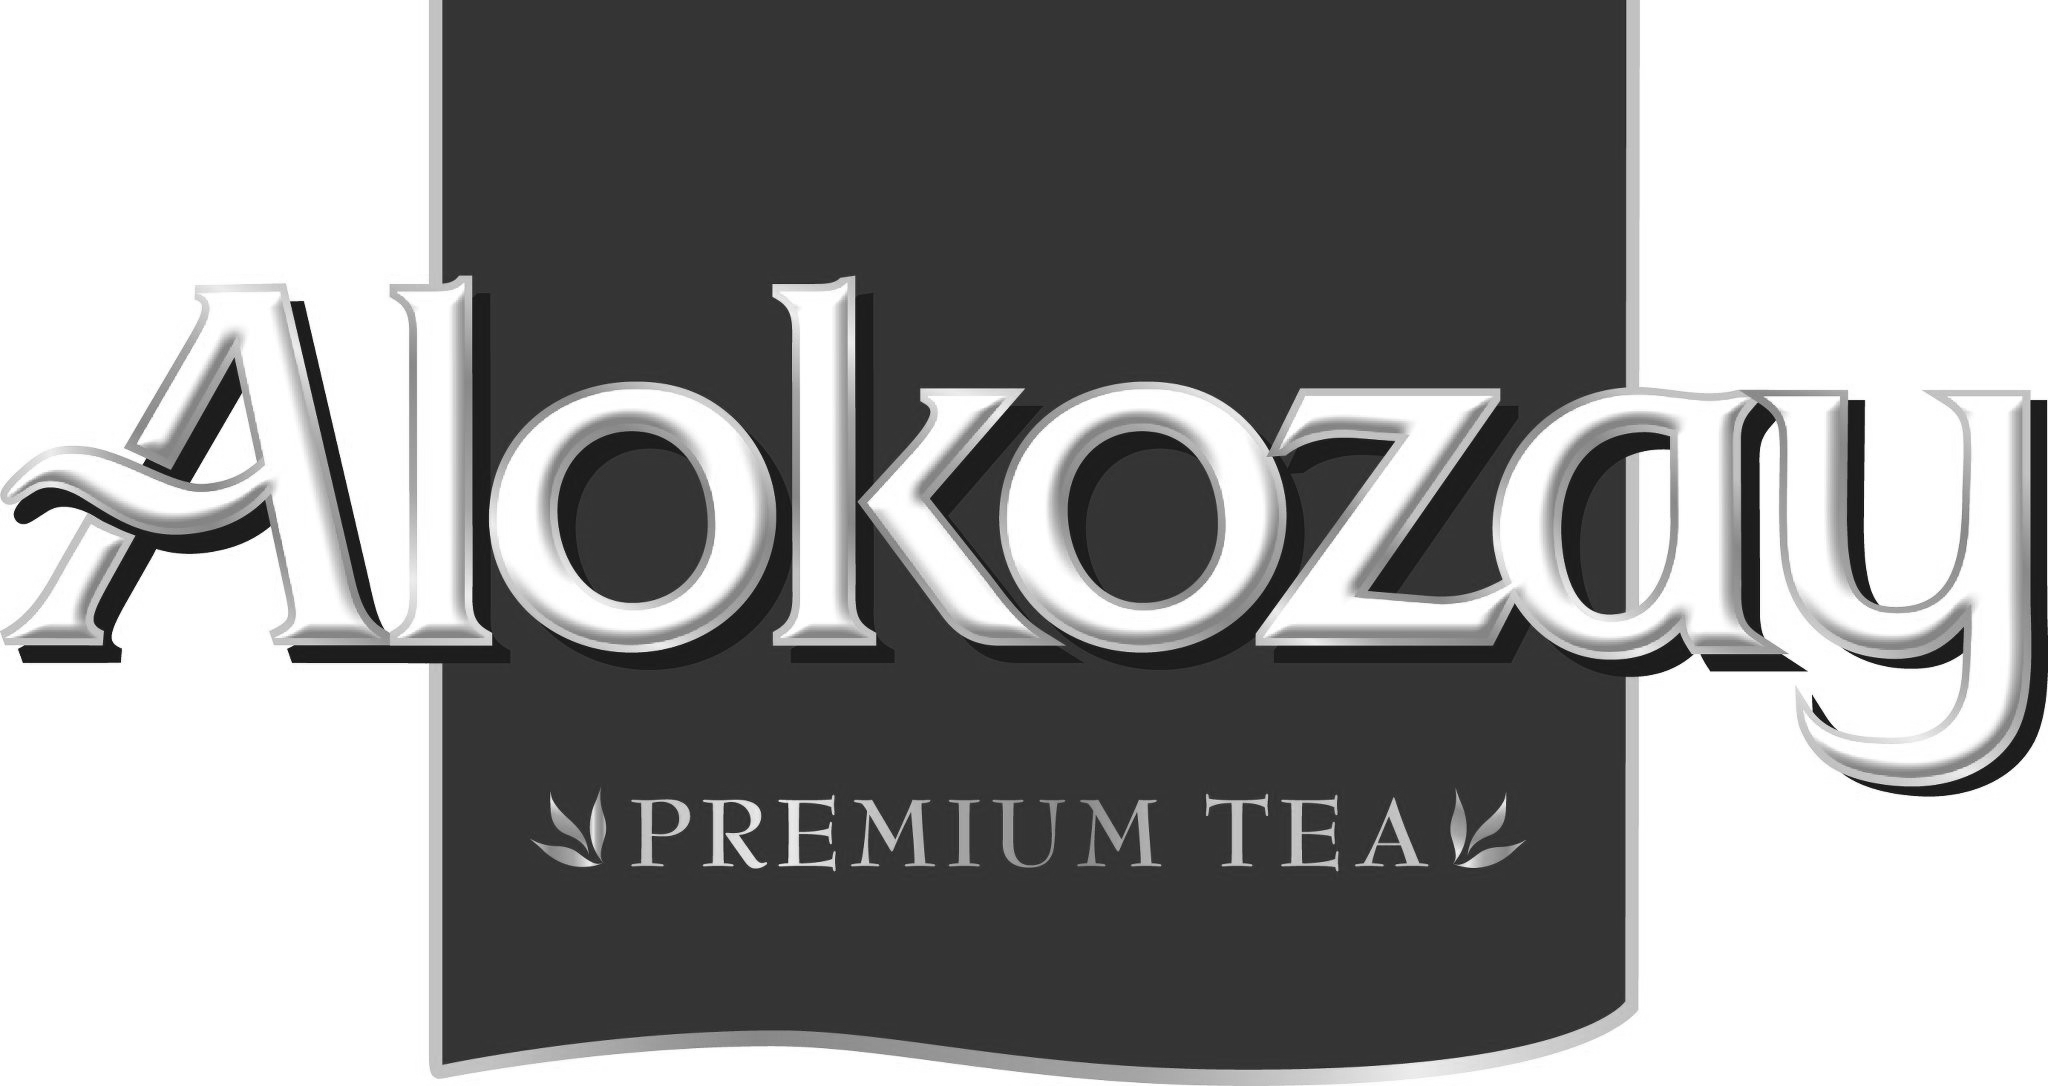 Alokozay-Tea1.jpg